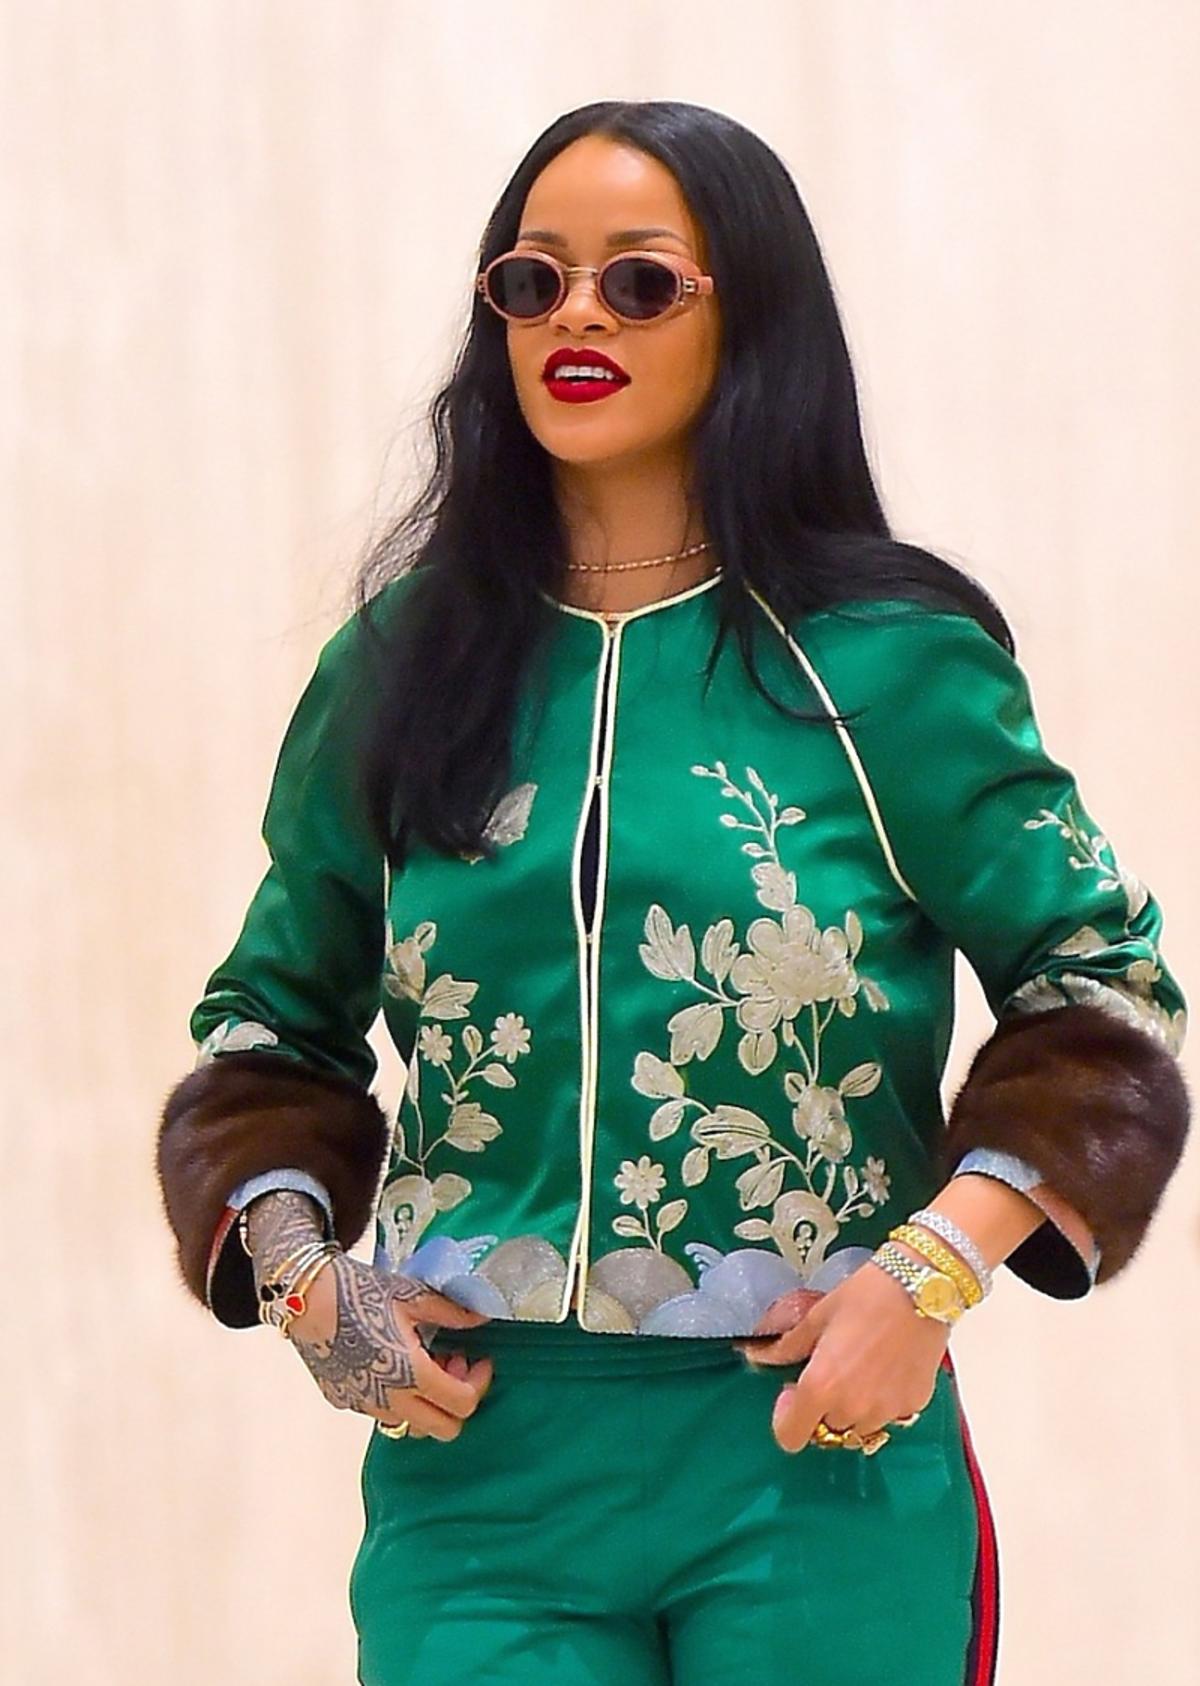 Rihanna w zielonym kombinezonie w haftowane kwiaty